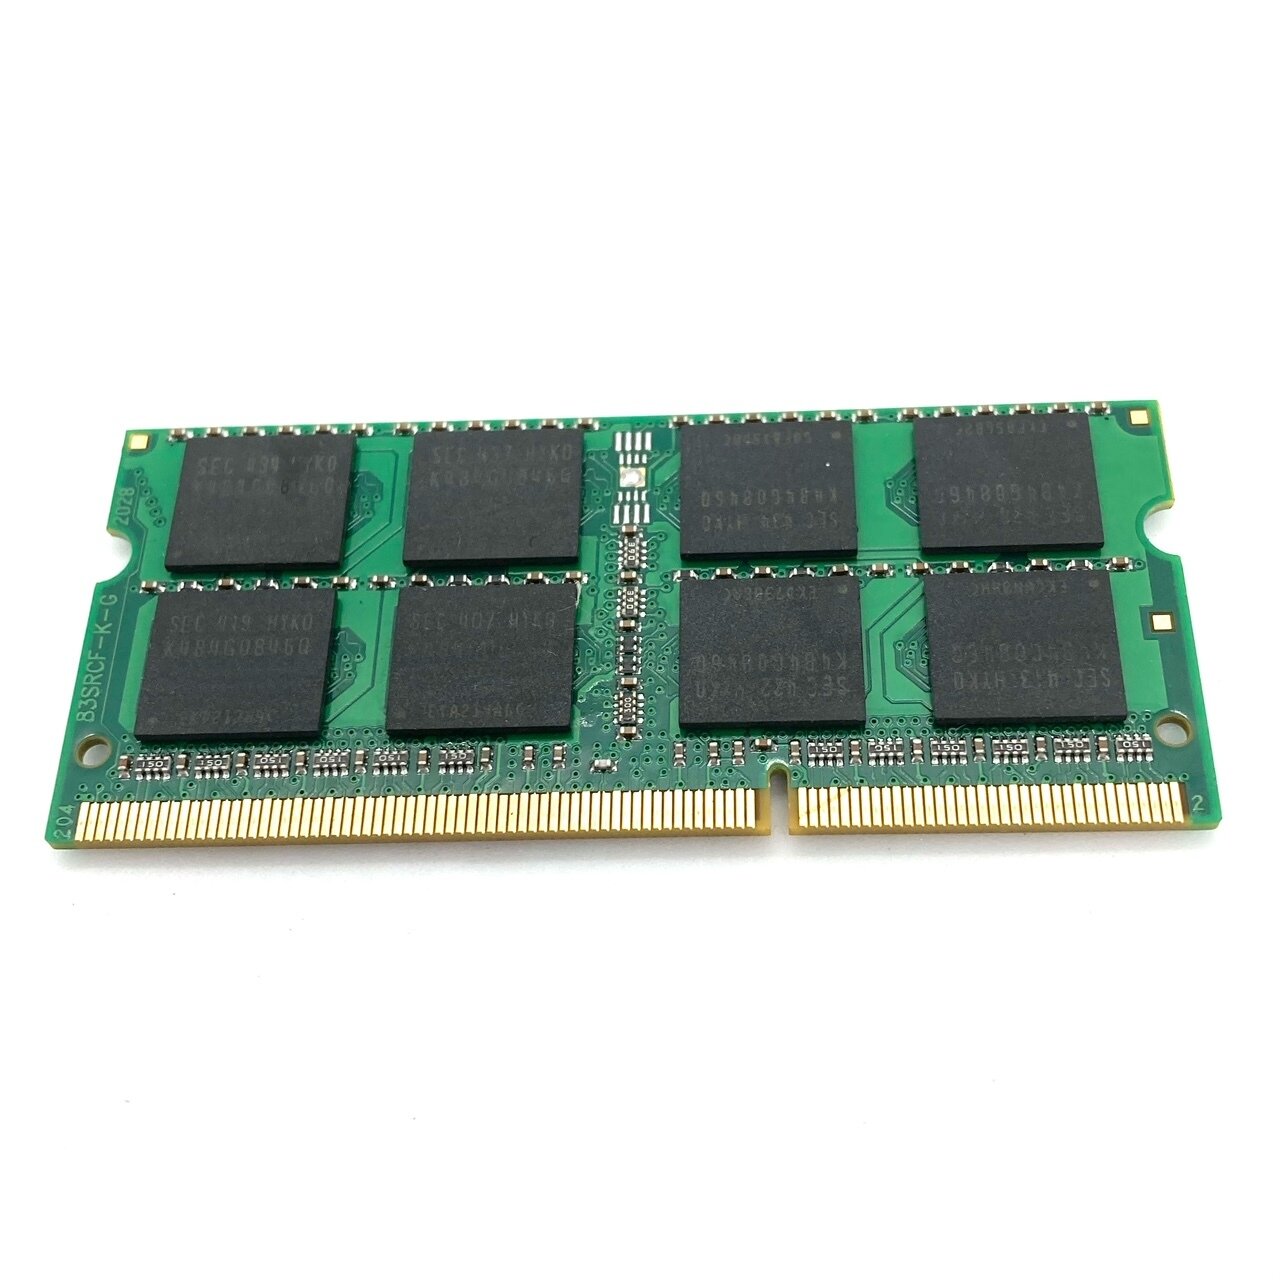 Модуль памяти Samsung SODIMM DDR3L 8Гб 1600 mhz 135V арт 078783